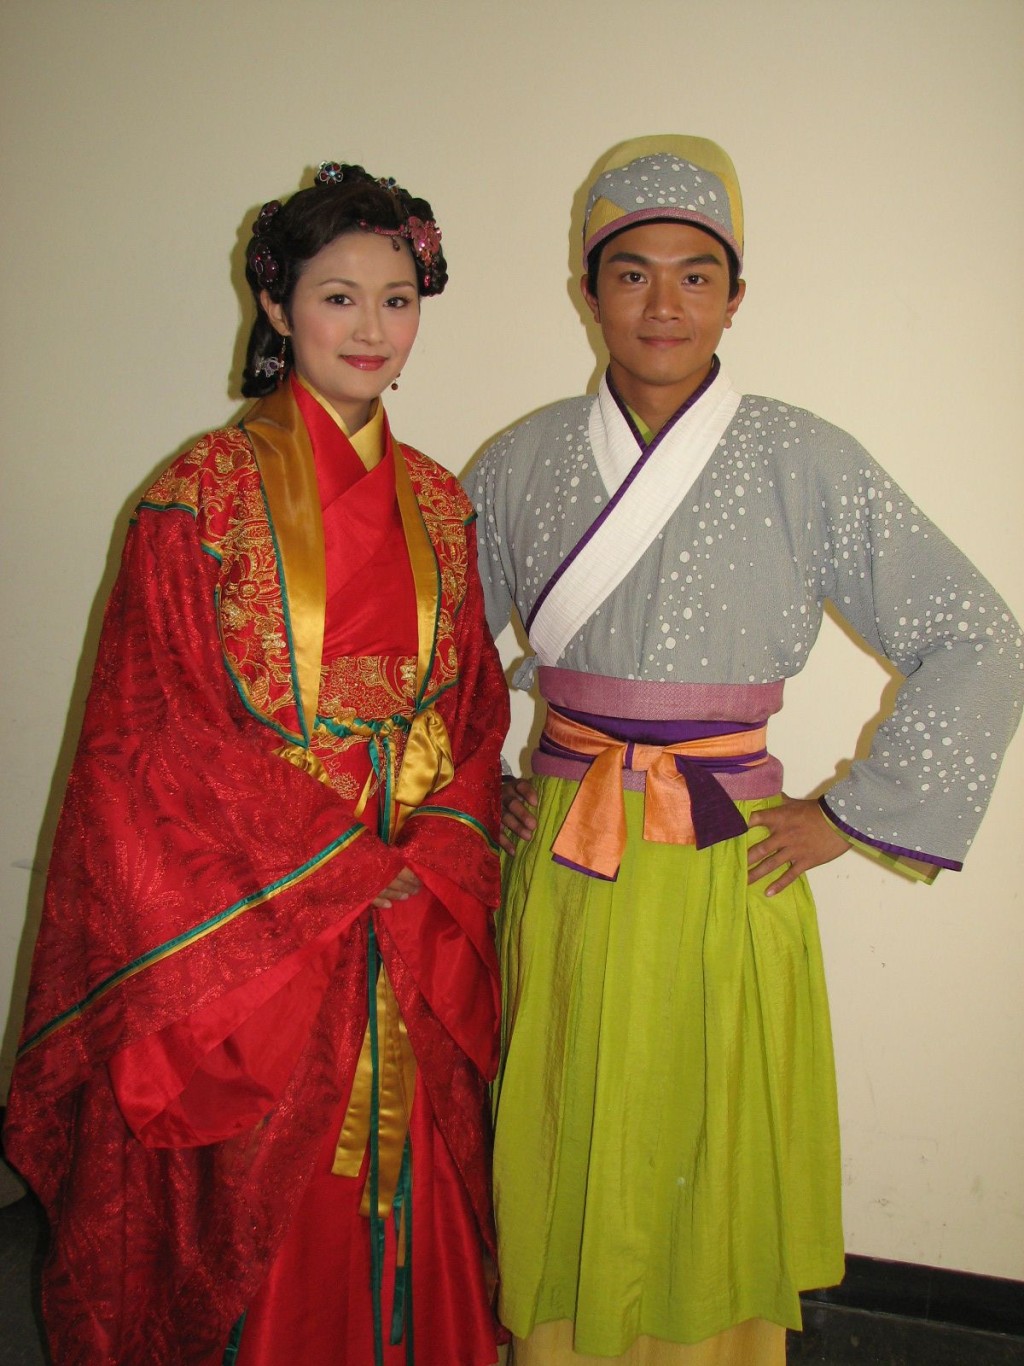 羅敏莊曾與胡諾言拍攝《大冬瓜》。